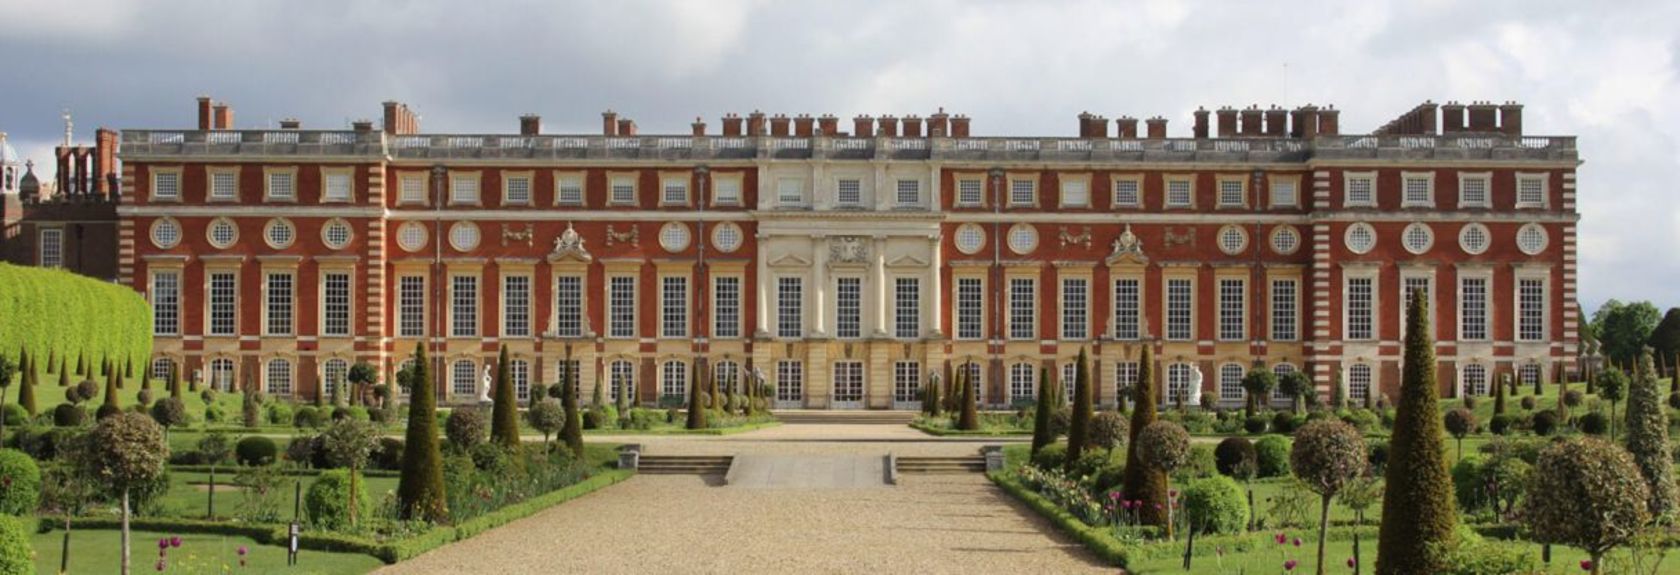 No sudoeste de Londres, na margem norte do Tamisa, está o maior castelo da Inglaterra, o Hampton Court Palace